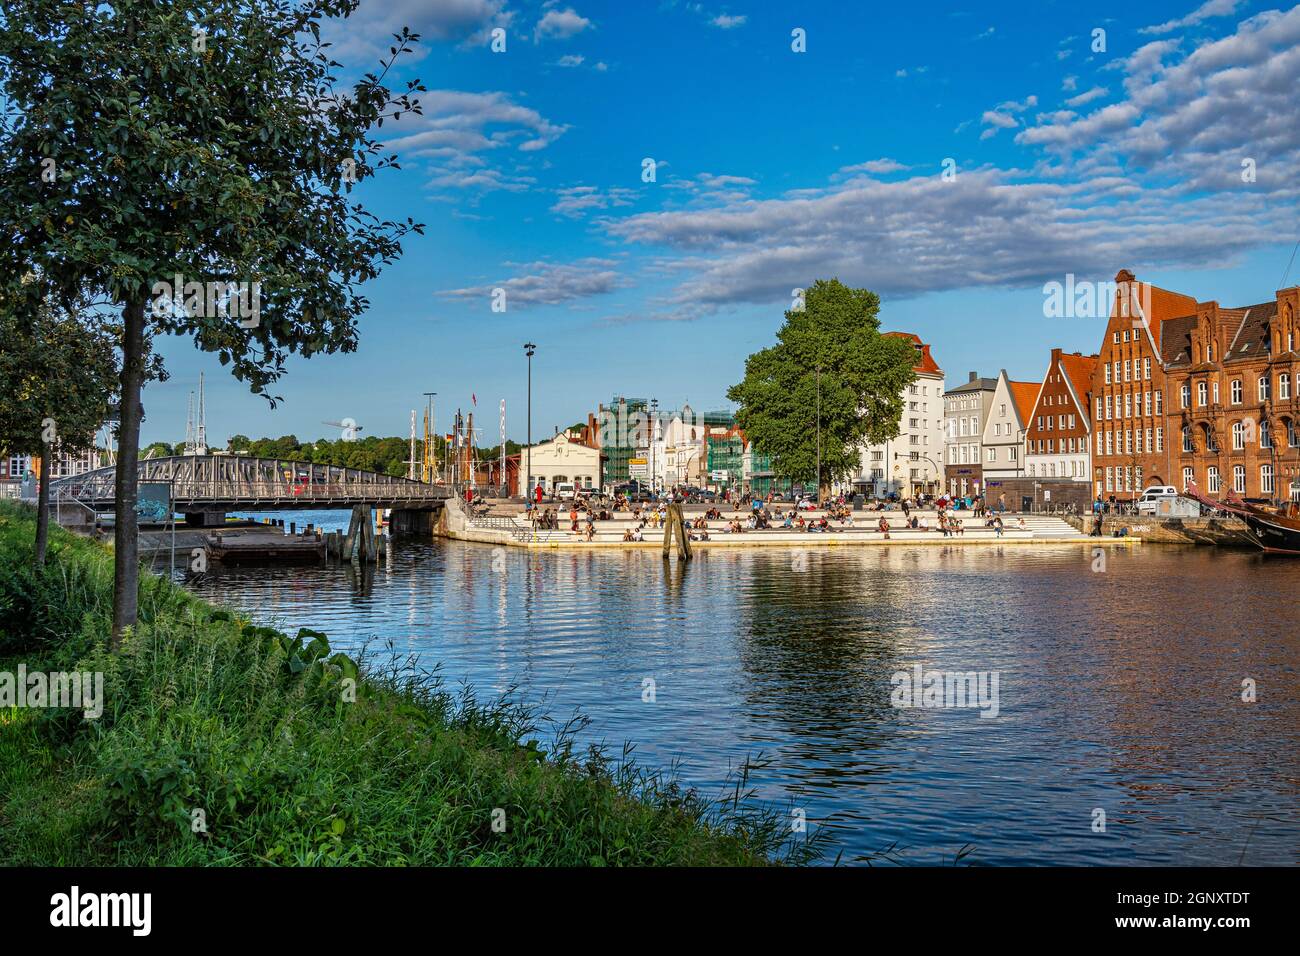 Paysage de la ville de Lübeck sur la place du pont pivotant au-dessus de la rivière Trave. Lübeck, Land de Schleswig-Holstein, Allemagne, Europe Banque D'Images